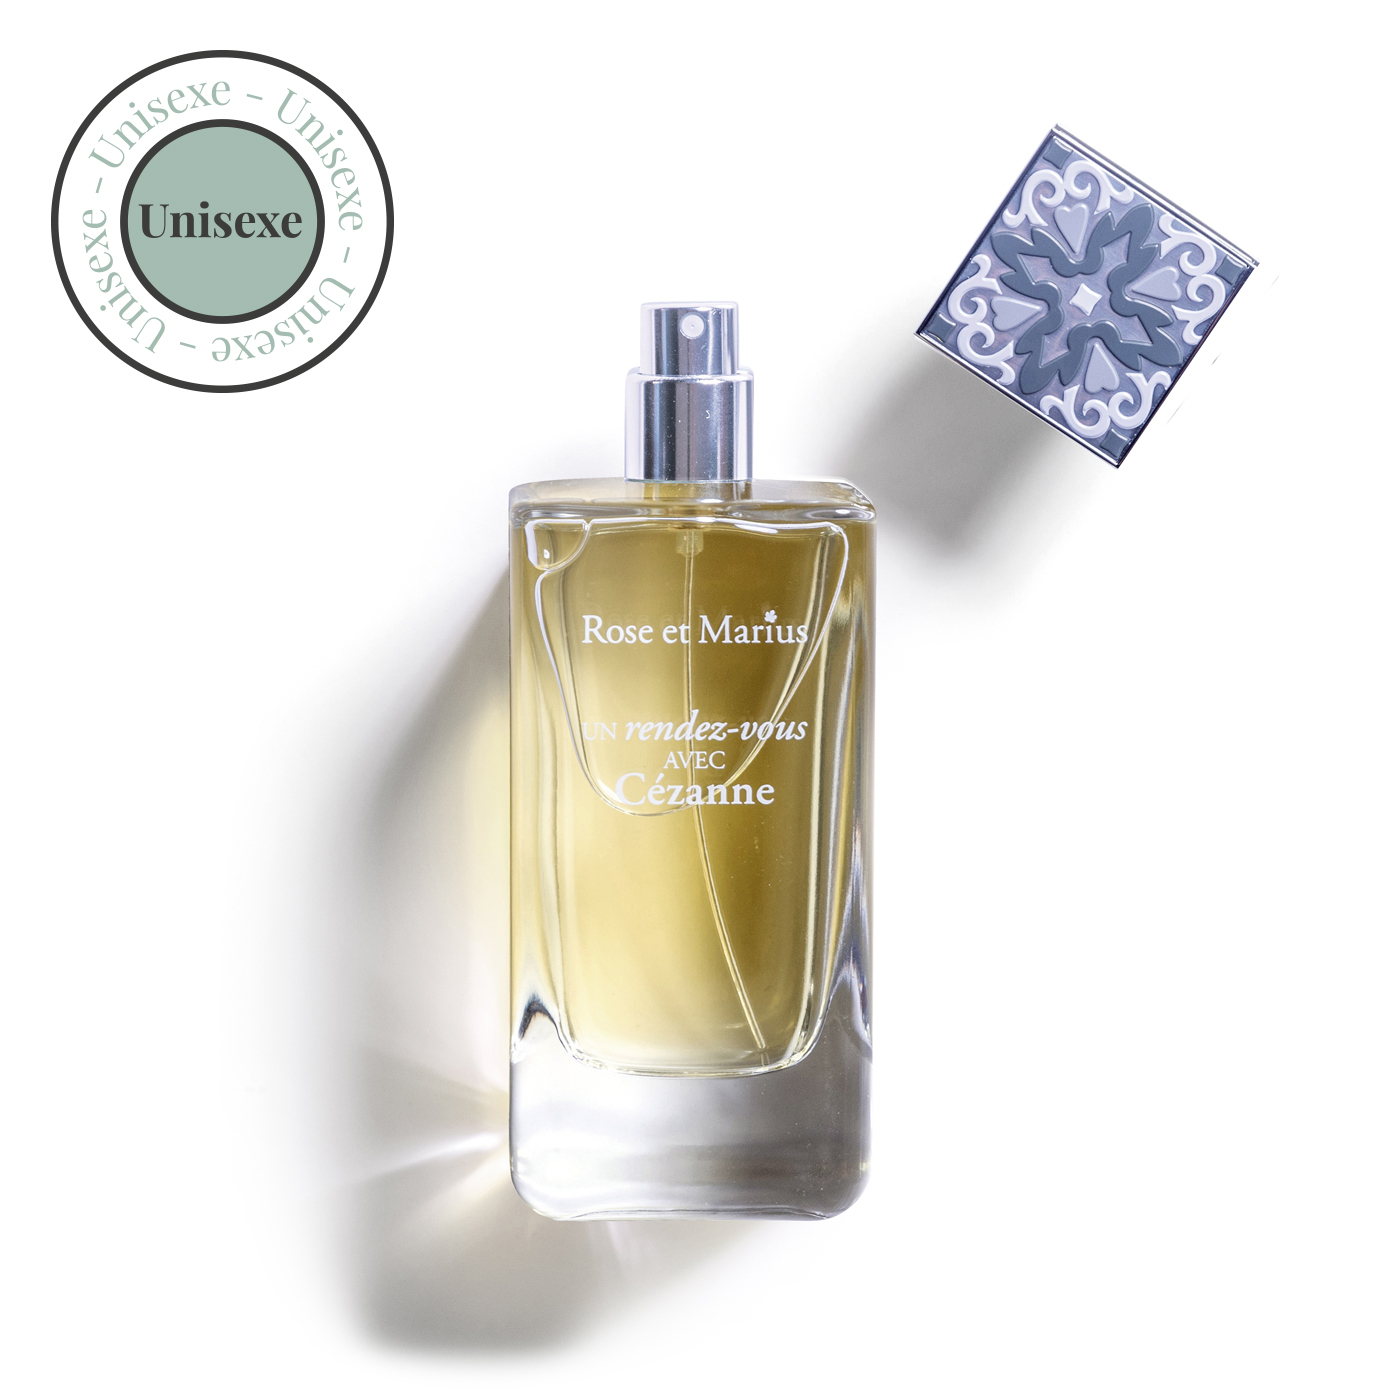 The Iconic Collection Soleil d'Or 50ml - eau de parfum